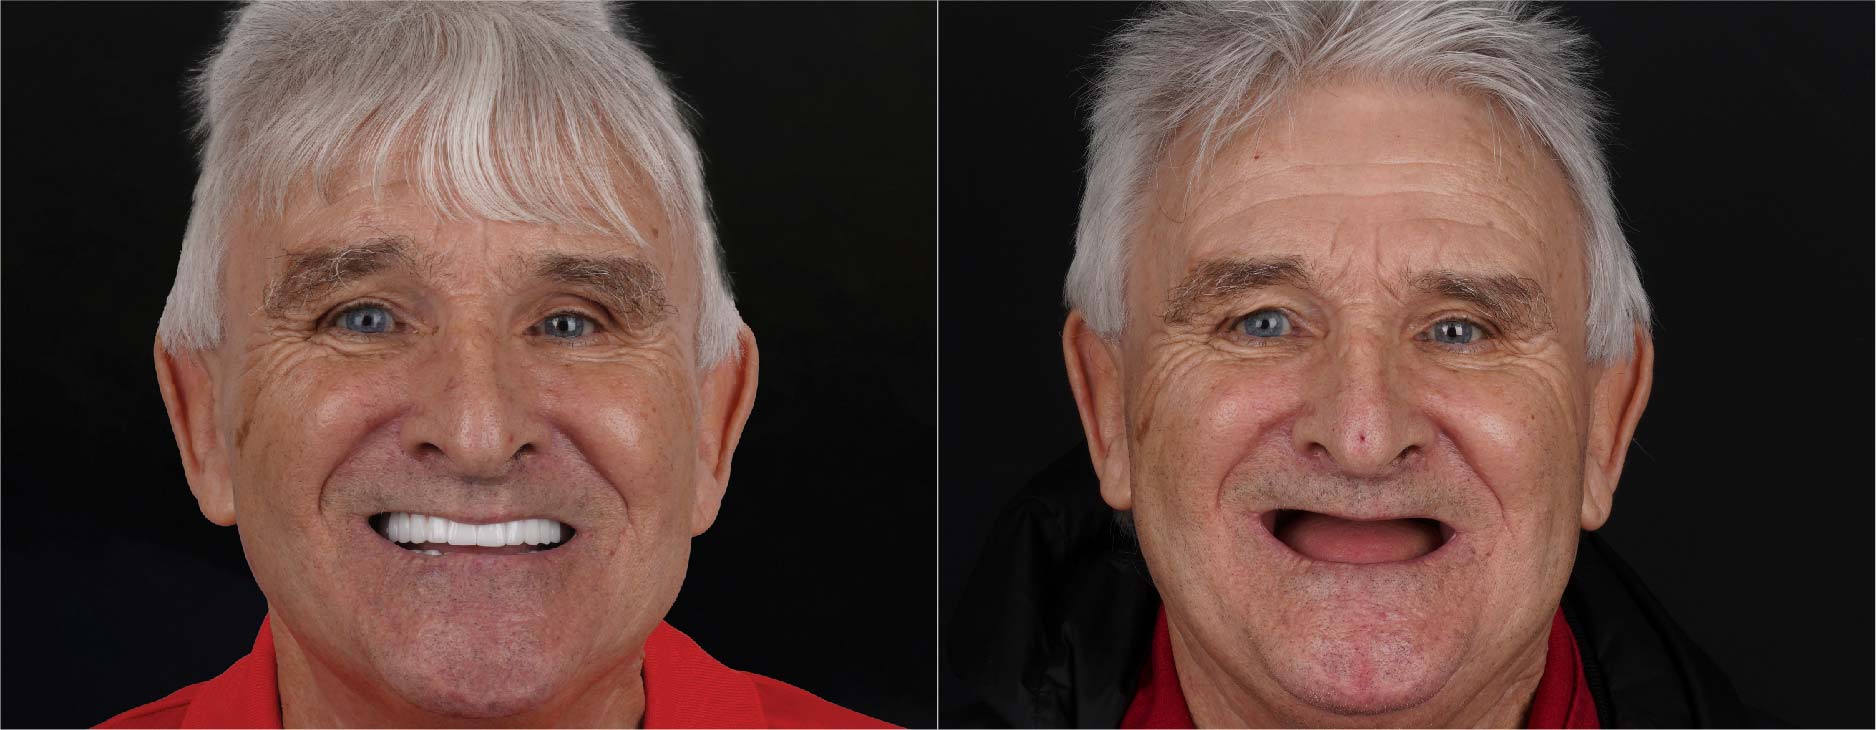 Antes y después de los implantes dentales All-on-4